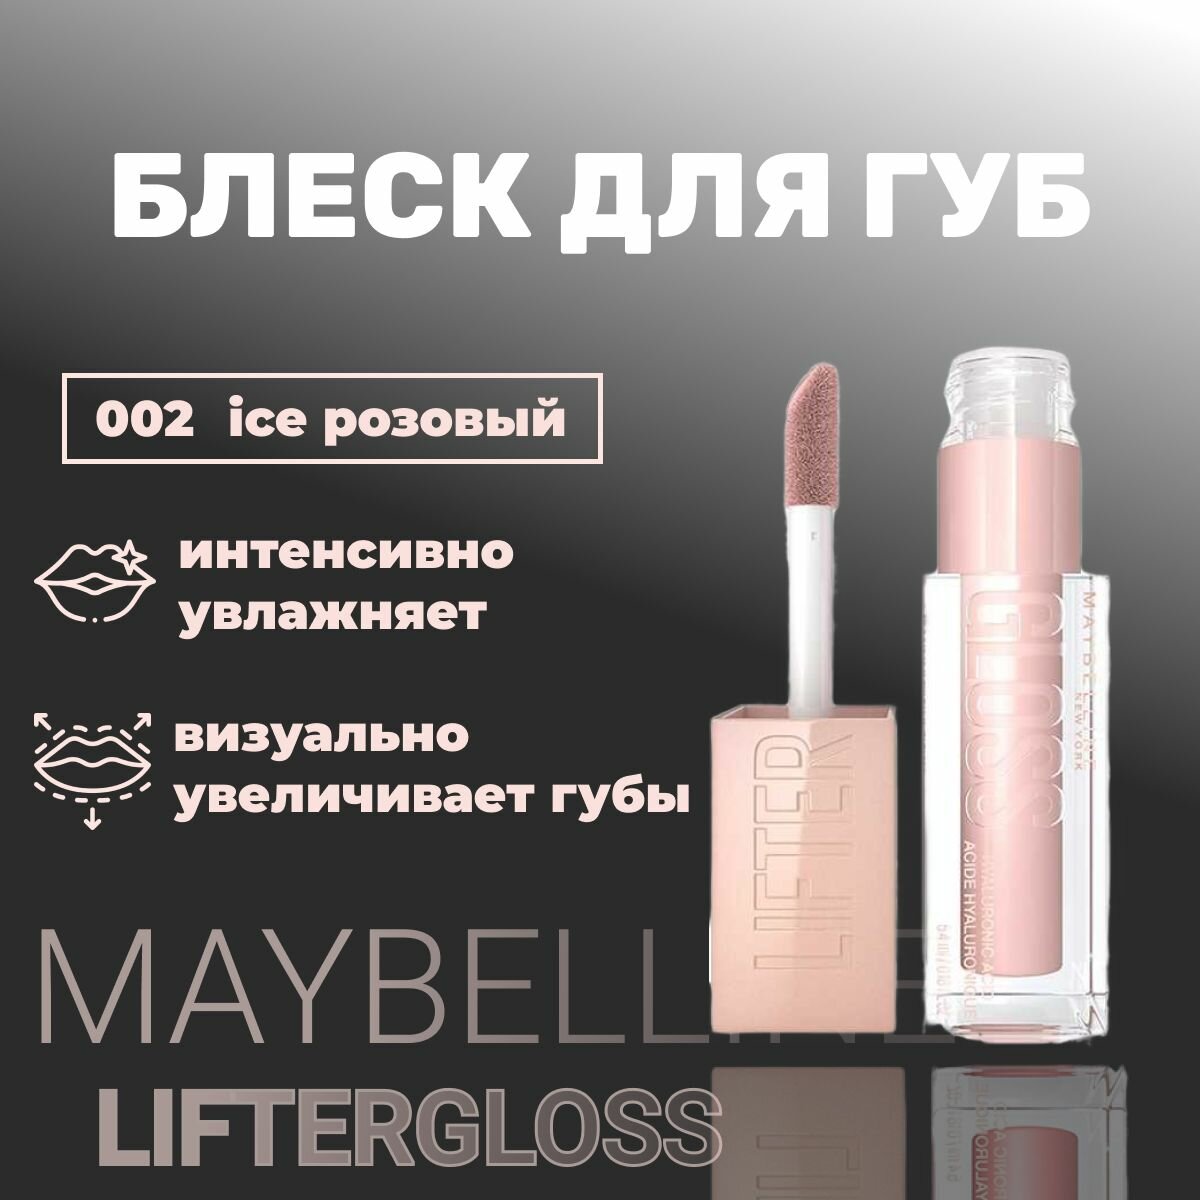 Блеск для губ MAYBELLINE lifter gloss 002